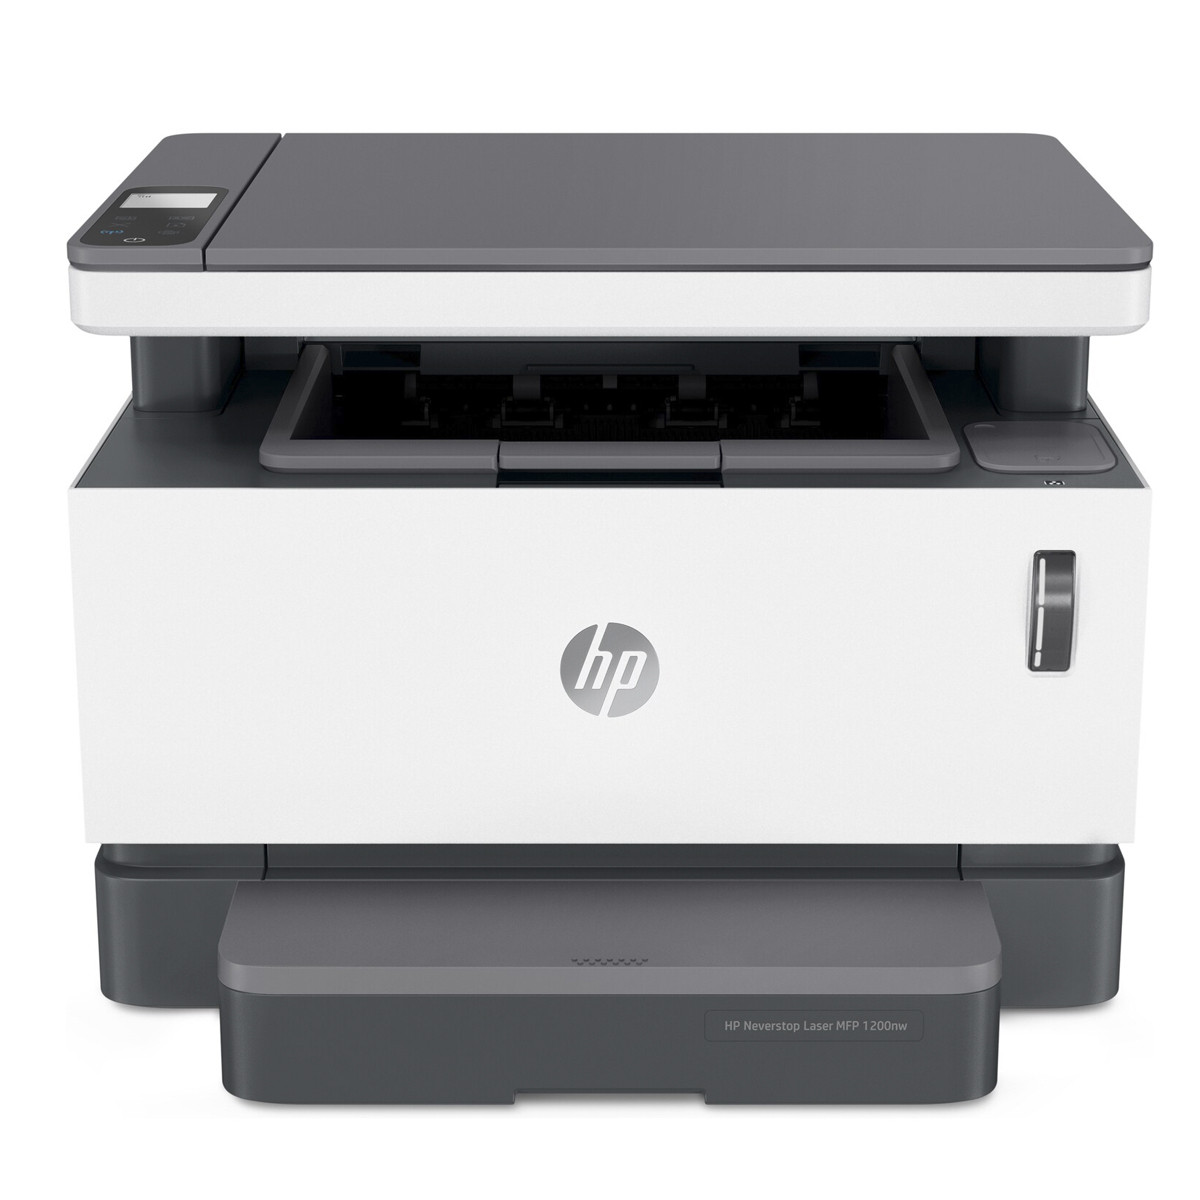 Impressora HP Neverstop MFP 1200NW 5HG85A Multifuncional com Conexão Wireless